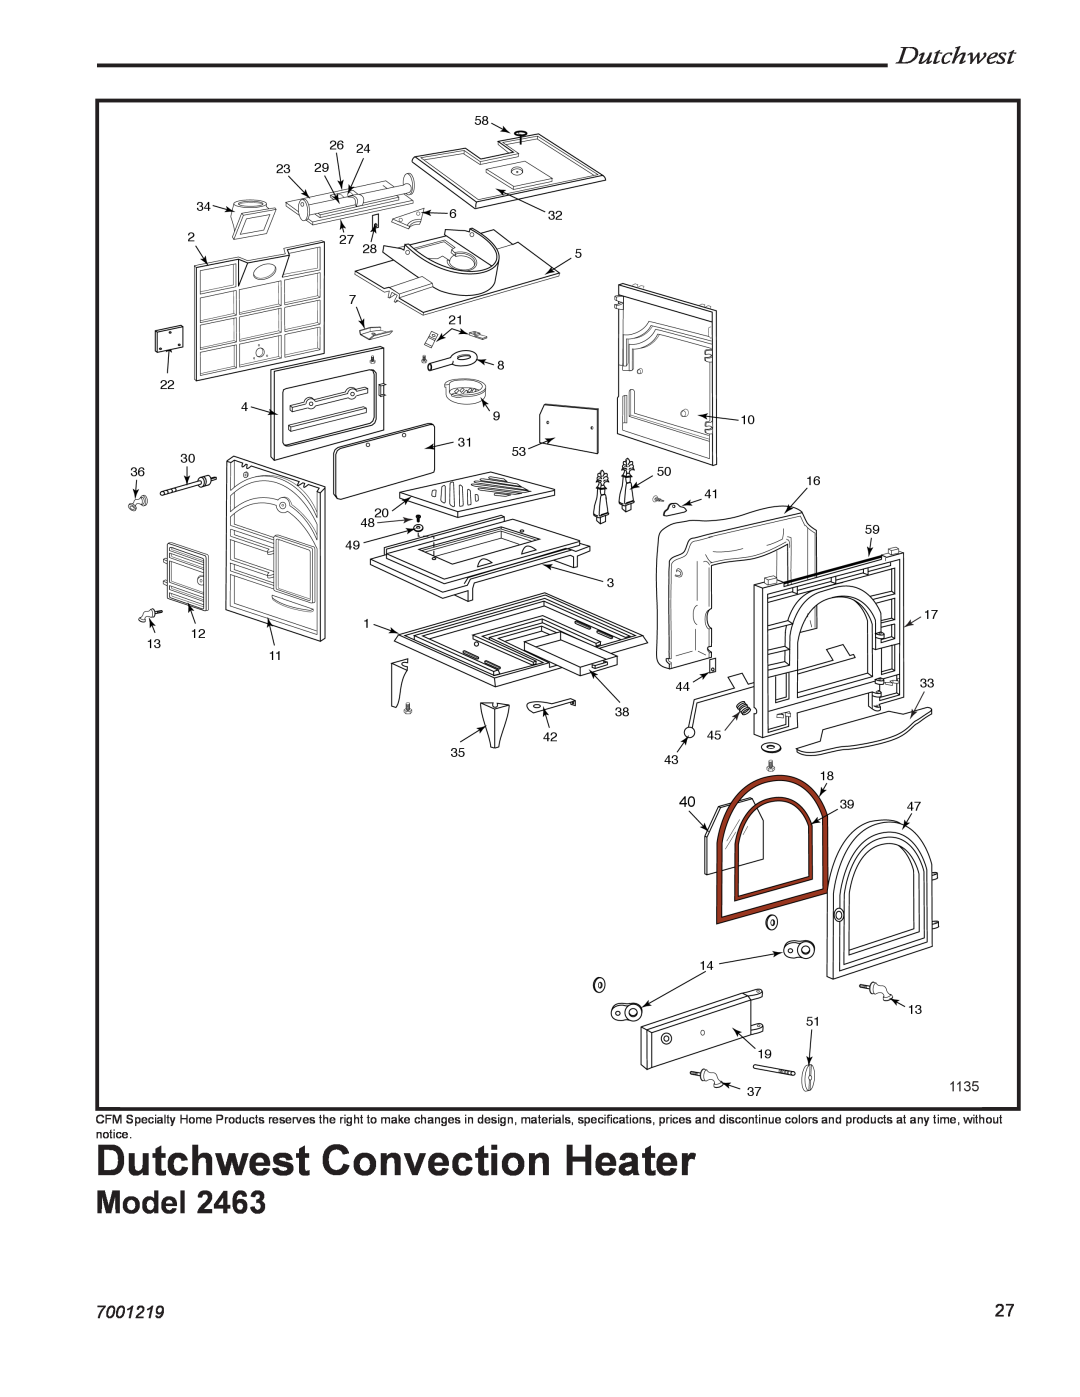 Vermont Casting 2463 manual Dutchwest Convection Heater, Model, 7001219 